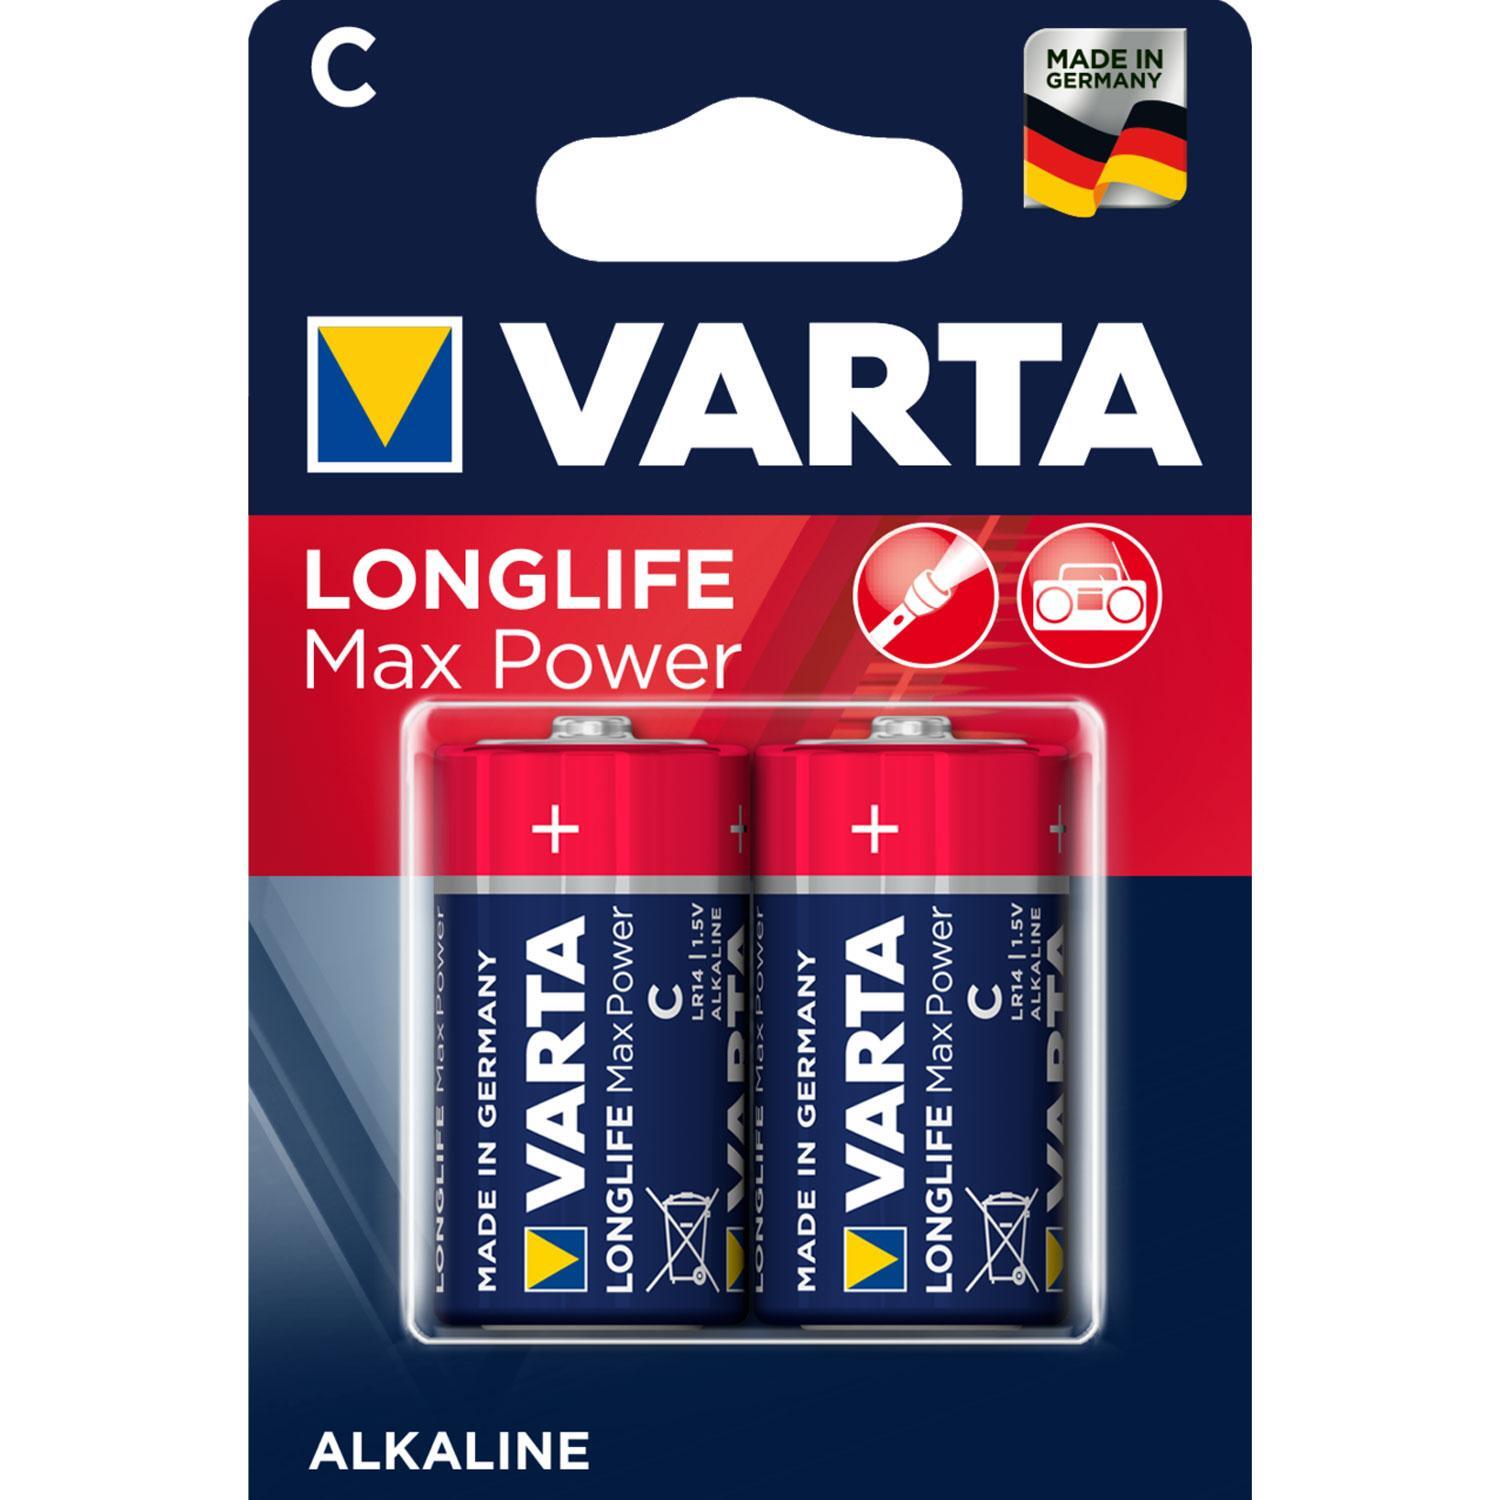 Varta Longlife Max Power C-batterier (2-pak)